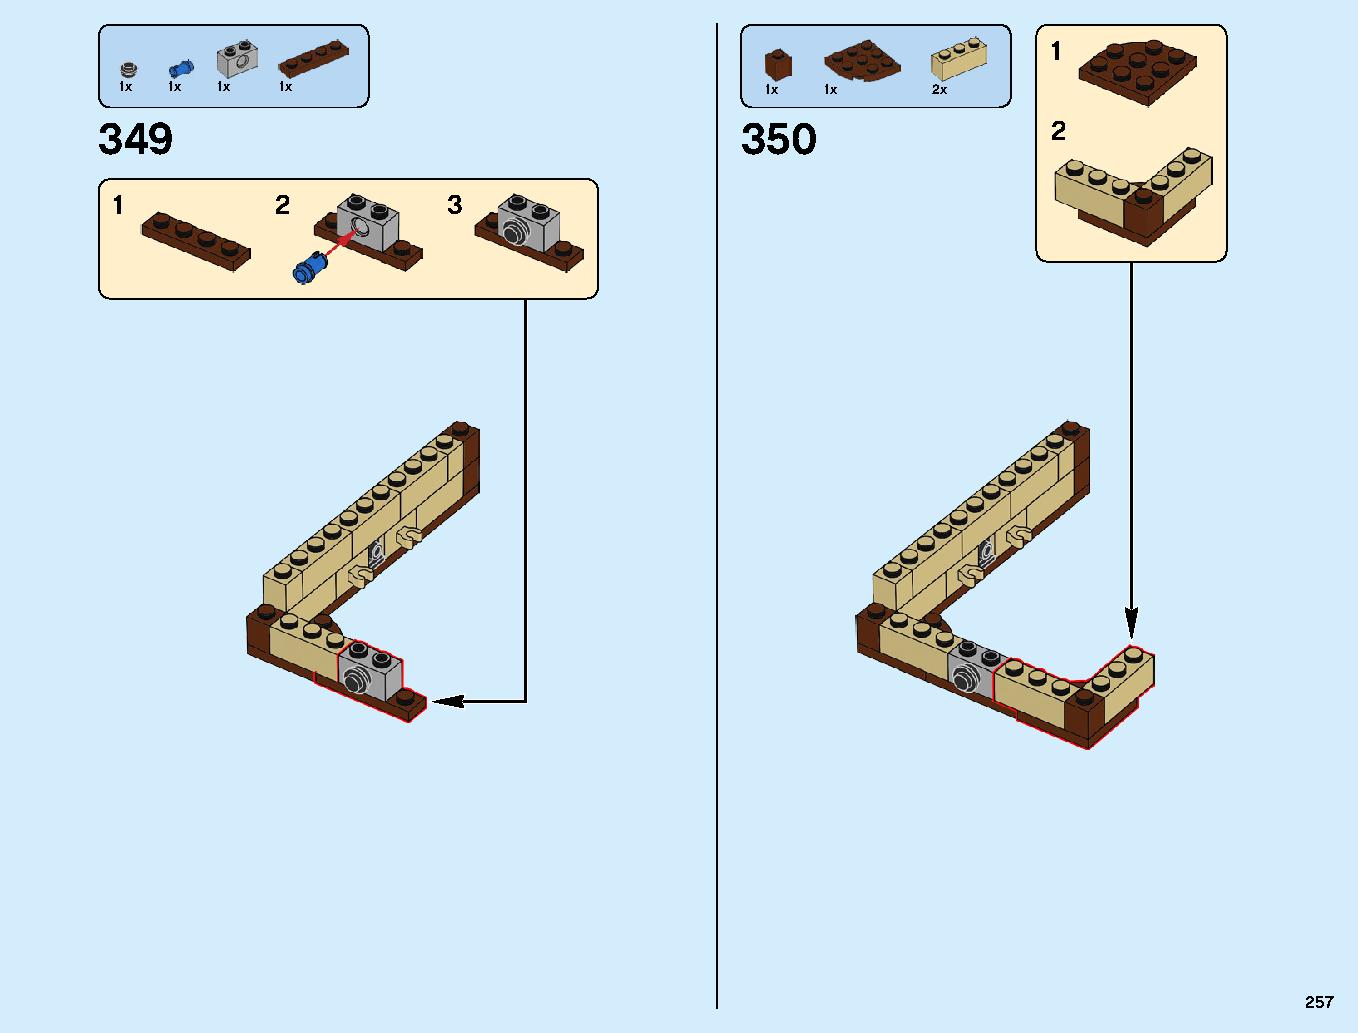 ニンジャゴーシティ・ポートパーク 70657 レゴの商品情報 レゴの説明書・組立方法 257 page